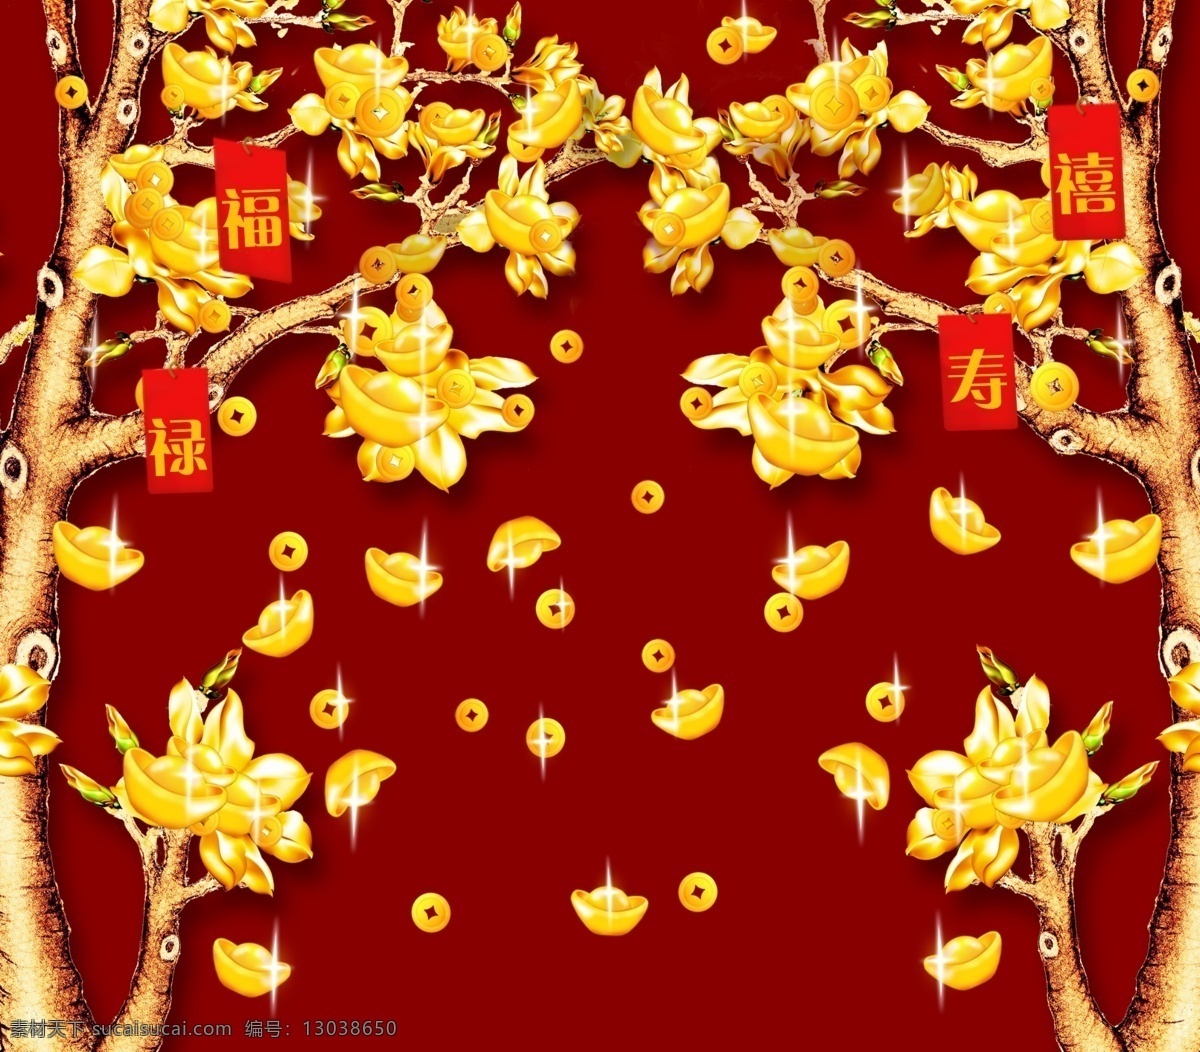 发财树电视墙 发财树 树 元宝 黄金树 背景墙 文化艺术 传统文化 装饰 环境设计 室内设计